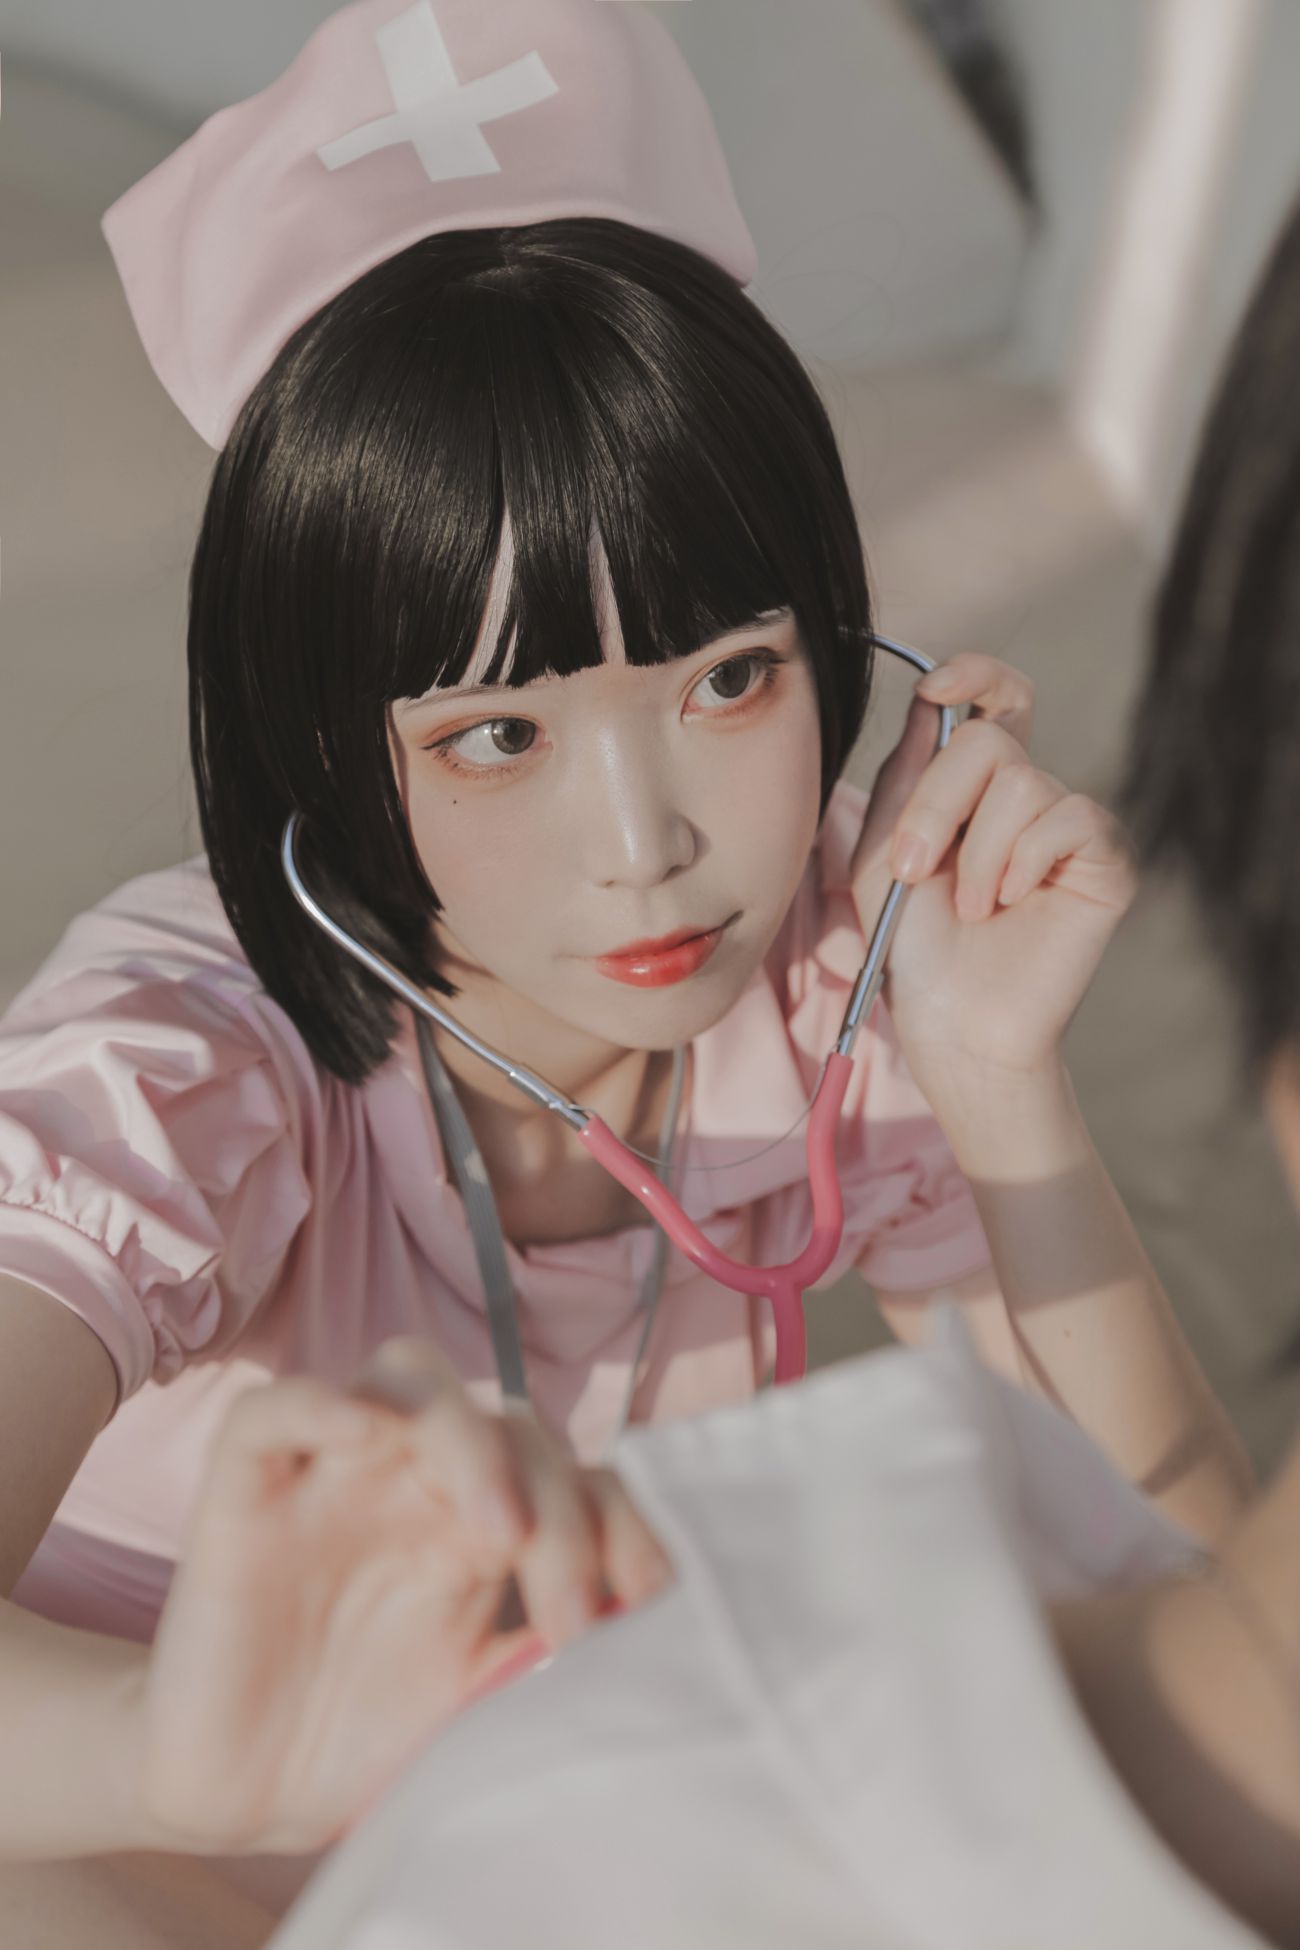 微博美少女Fushii海堂Cosplay性感写真护士 (6)